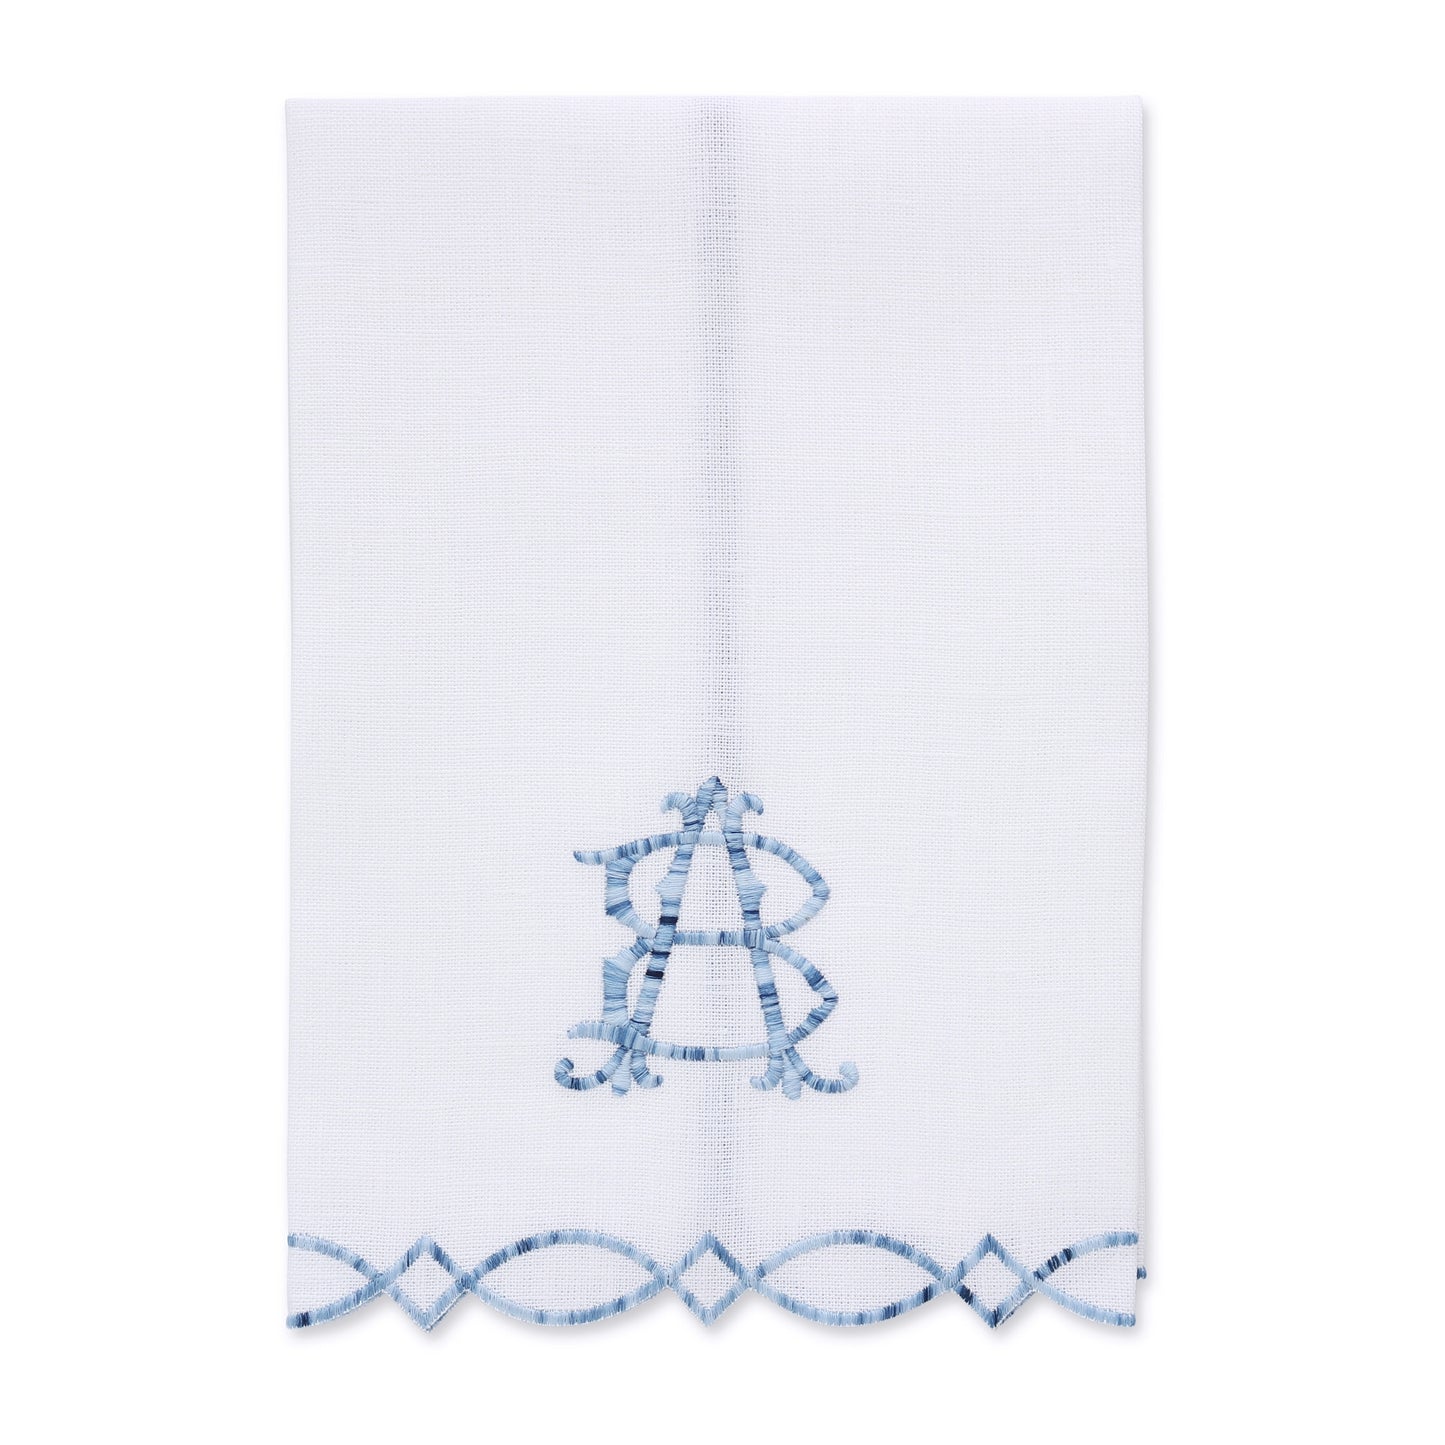 Asciugamano ospite in lino bianco con bordo moderno blu cineserie (ciascuno)